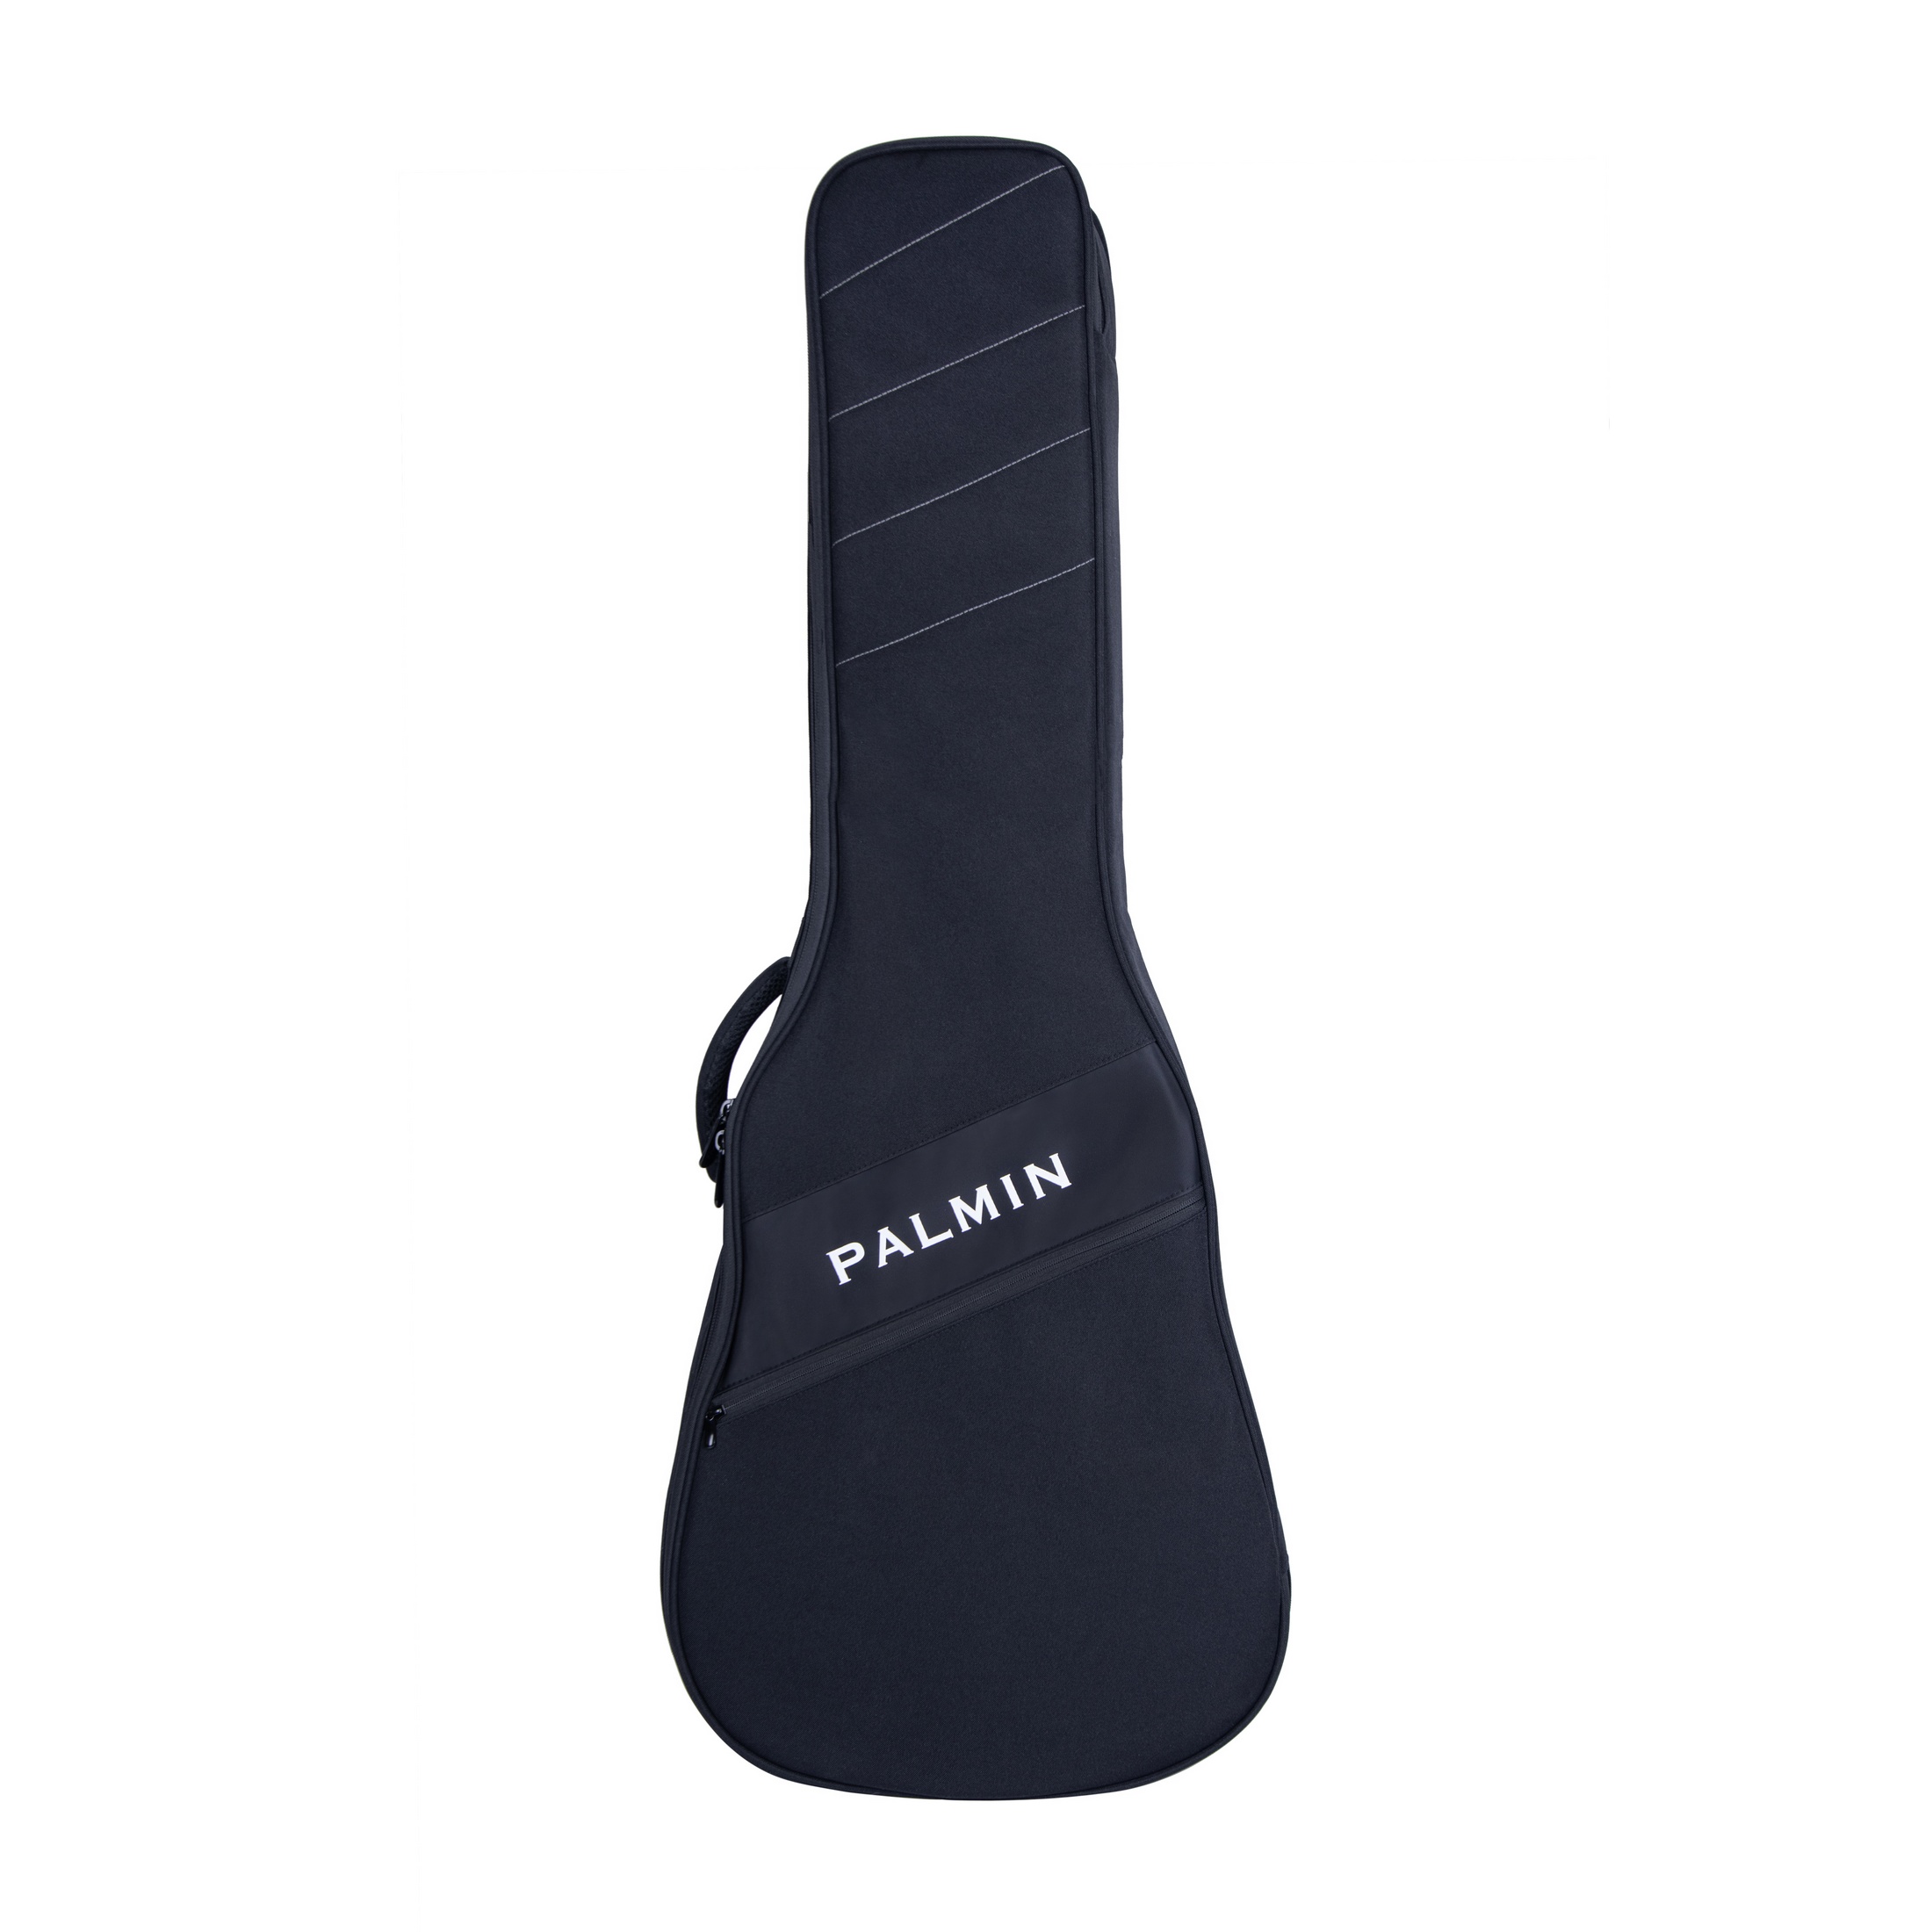 Стиль и надежность: Новая серия чехлов LITE для гитар от PALMIN